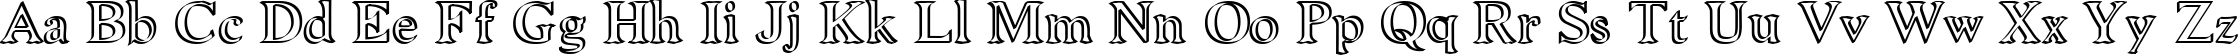 Пример написания английского алфавита шрифтом Niew CroMagnon Callig